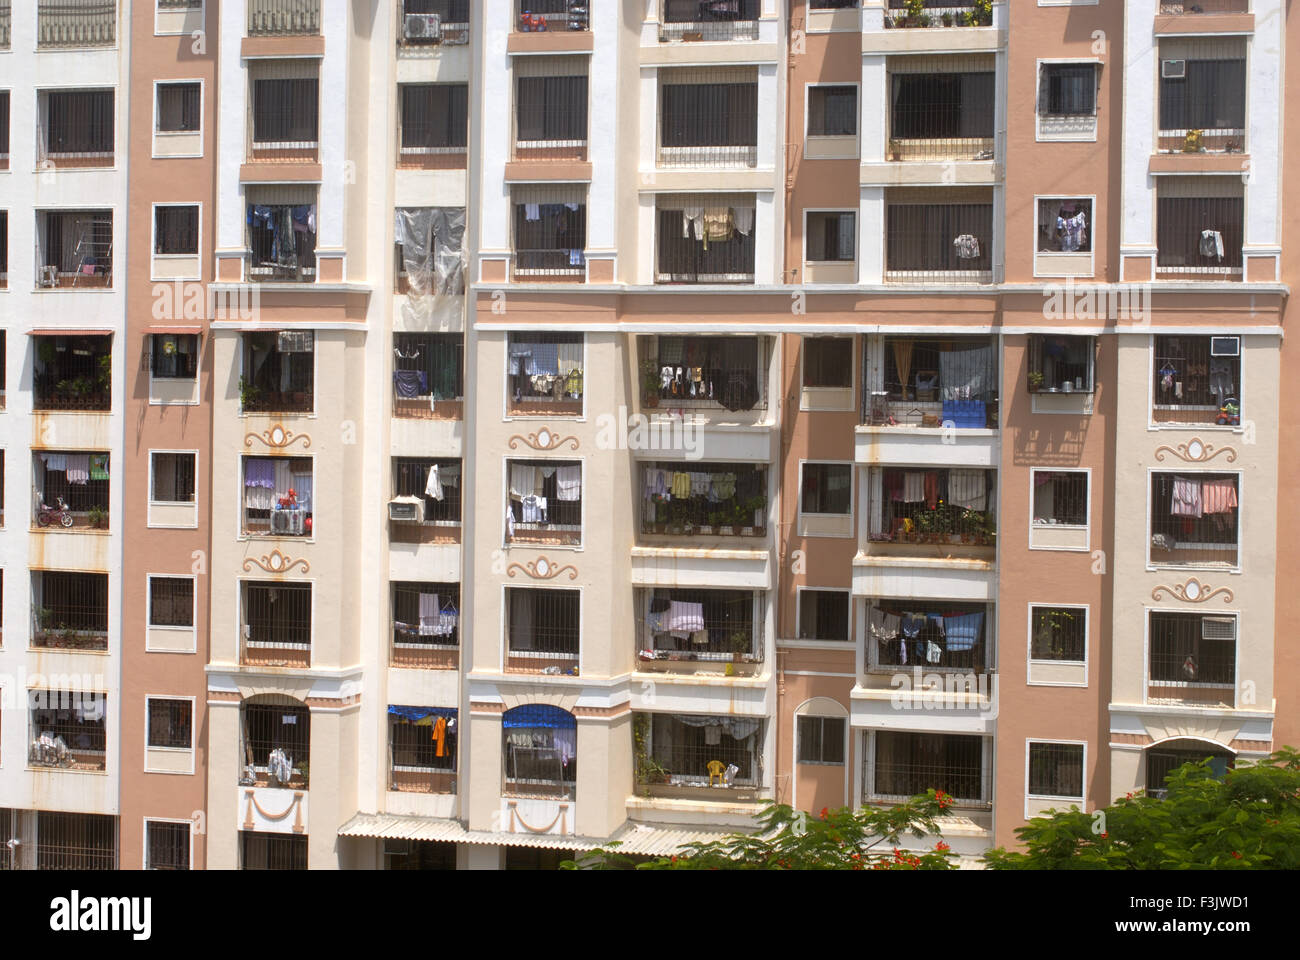 Balcons clos élévation d'une immense colonie moderne à Borivalii Mumbai Maharashtra inde asie Banque D'Images